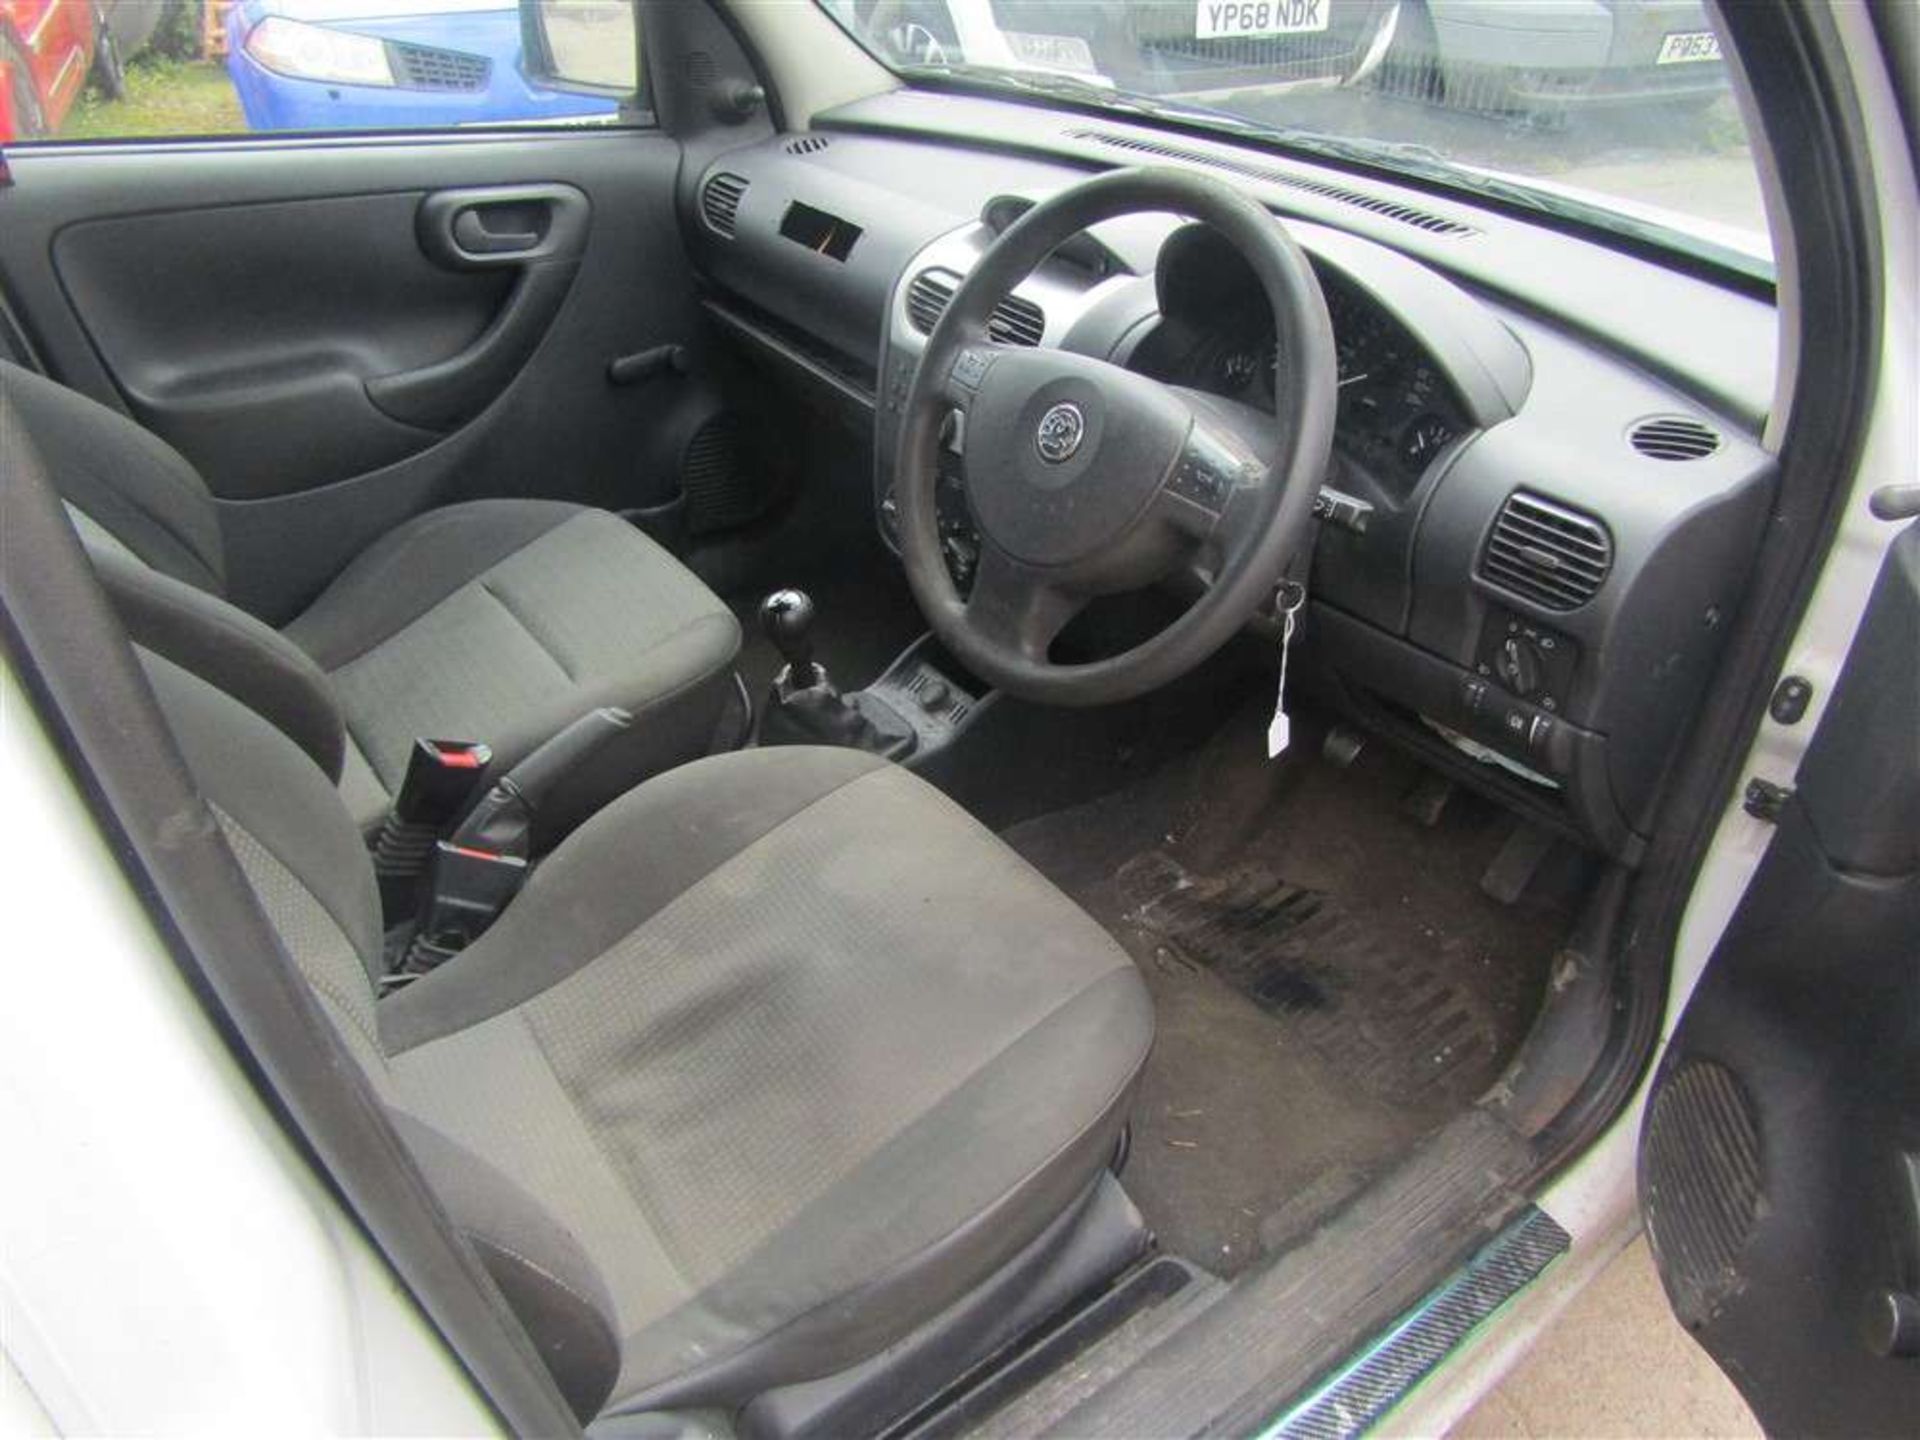 2011 11 reg Vauxhall Combo 1700 SE Ecoflex - Image 6 of 7